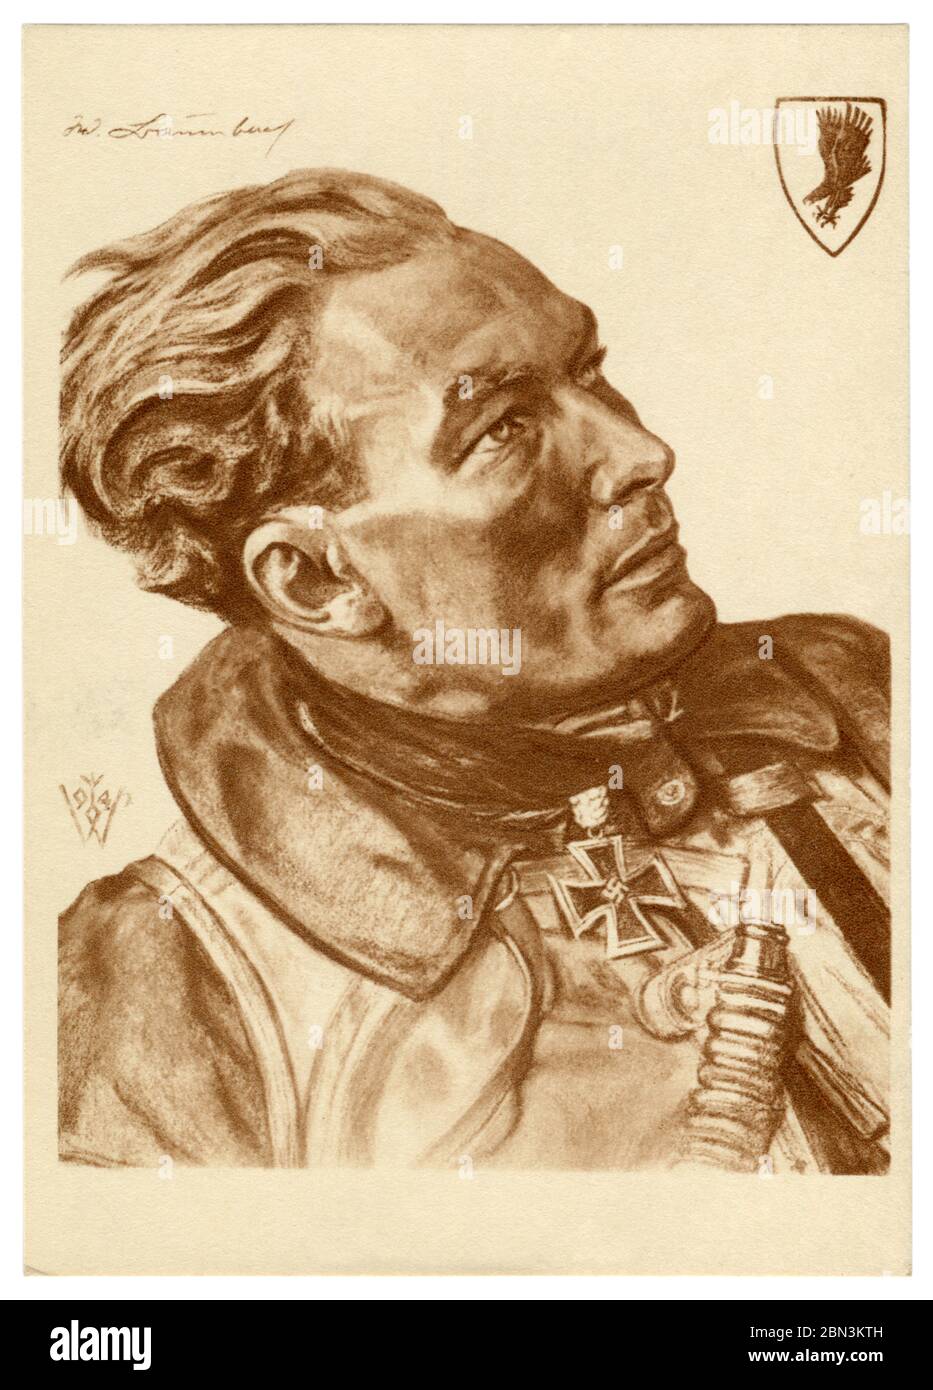 Carte postale historique allemande : portrait d'un pilote majeur Werner Baumbach avec une croix de fer avec des feuilles de chêne, artiste Wolfgang Willrich, Allemagne, années 1940 Banque D'Images